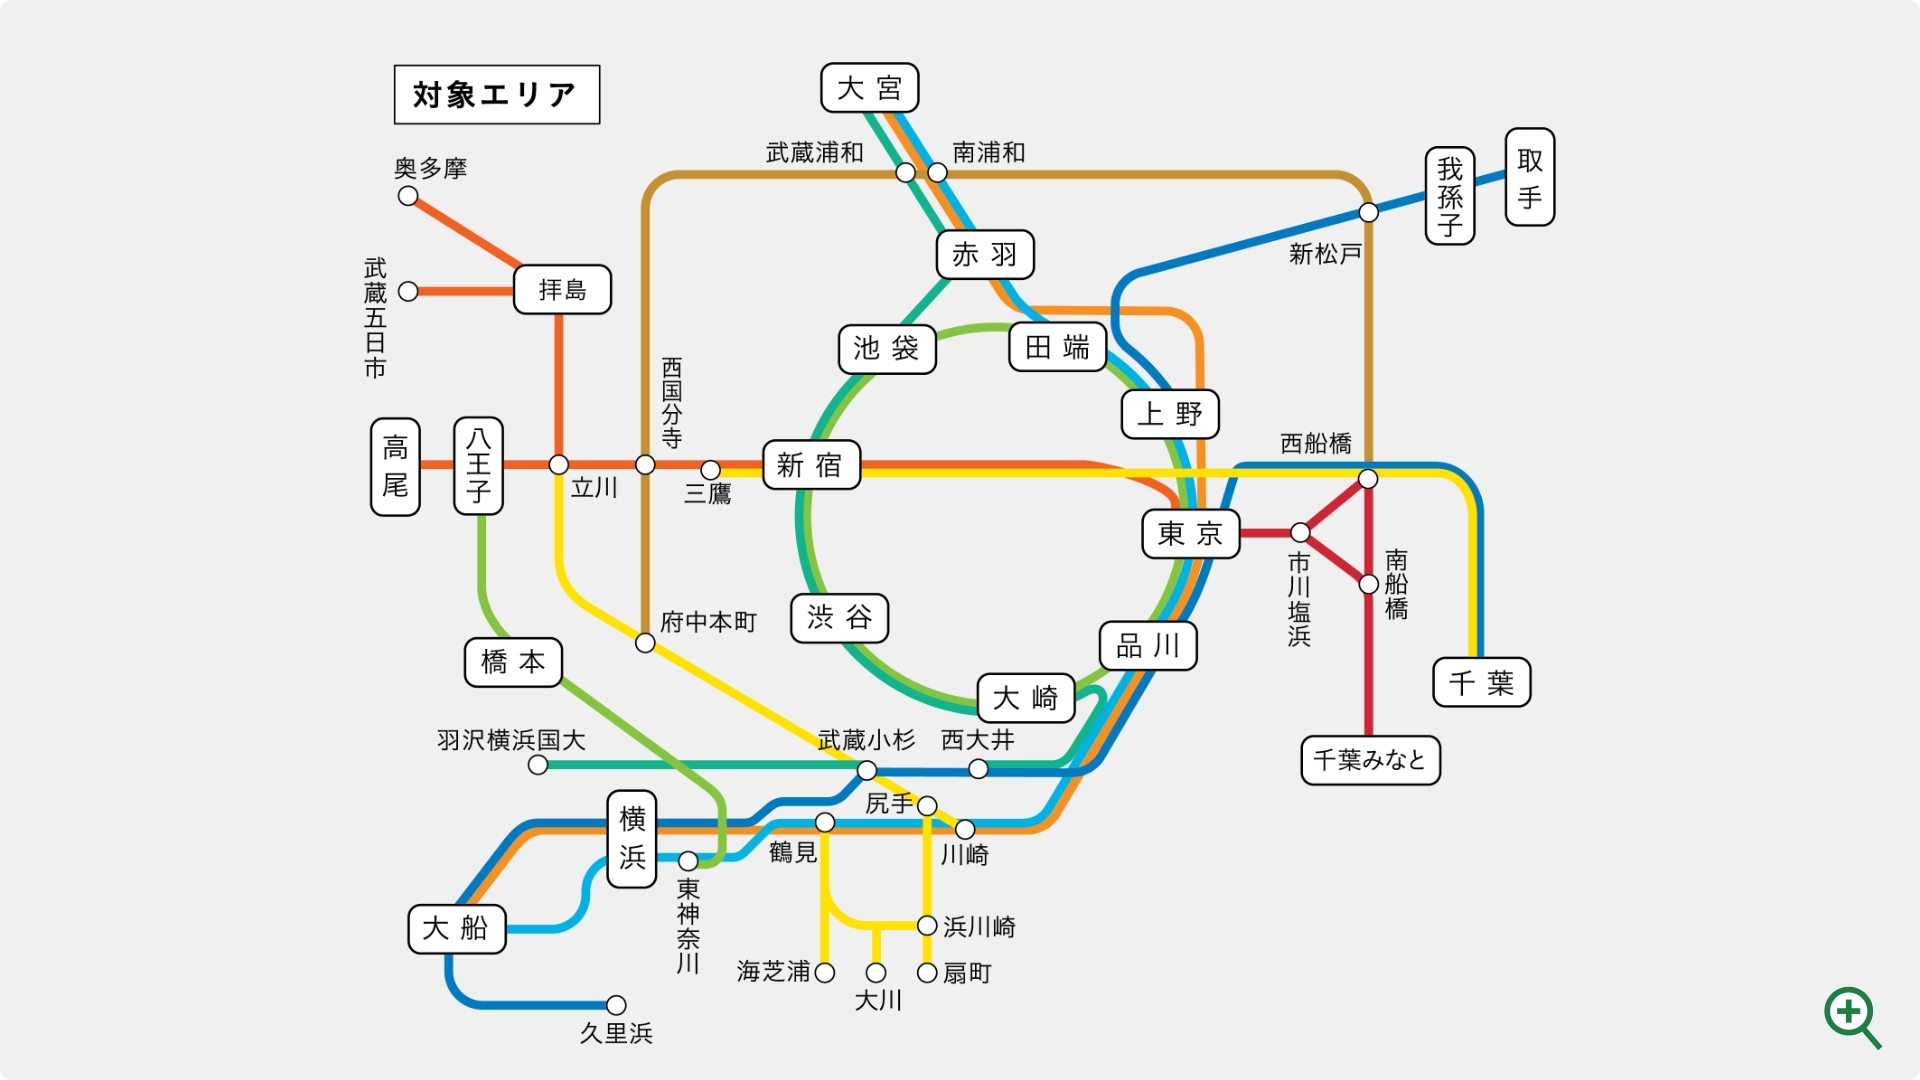 東京の電車特定区間